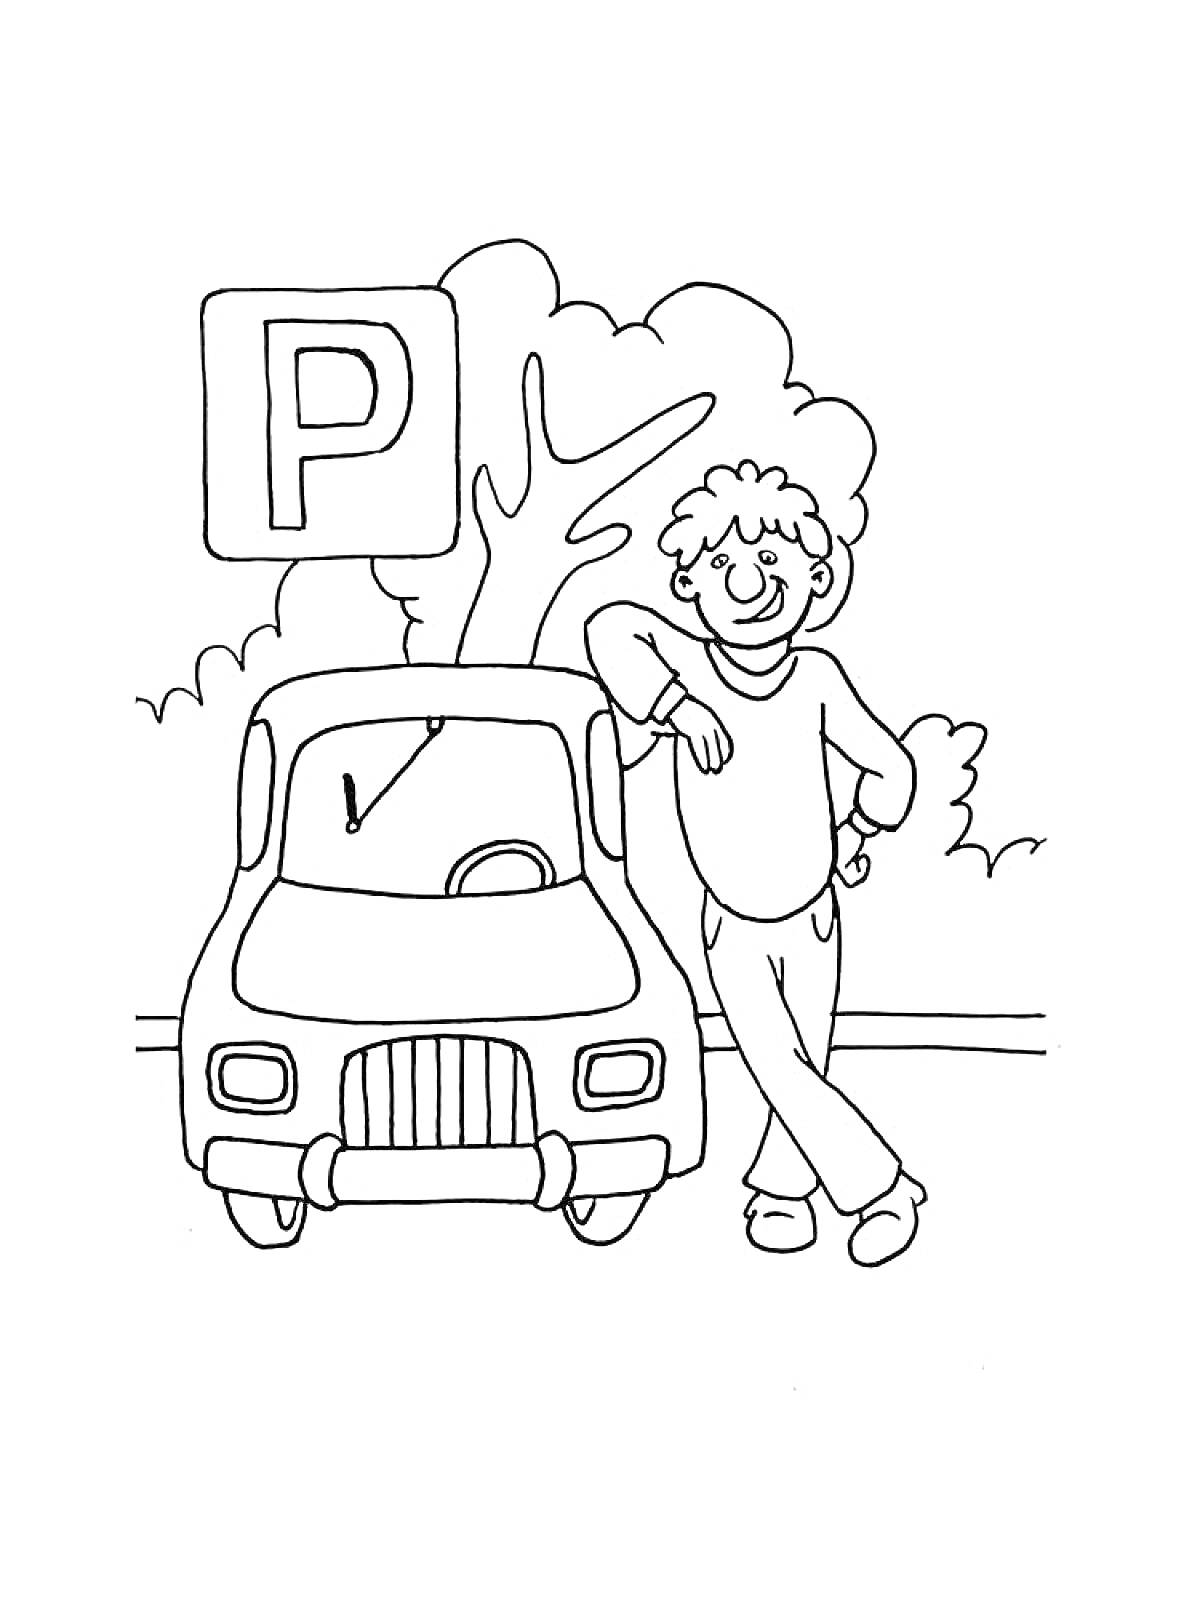 На раскраске изображено: Парковка, Мальчик, Машина, Знак, Деревья, ПДД, Правила дорожного движения, Авто, Транспорт